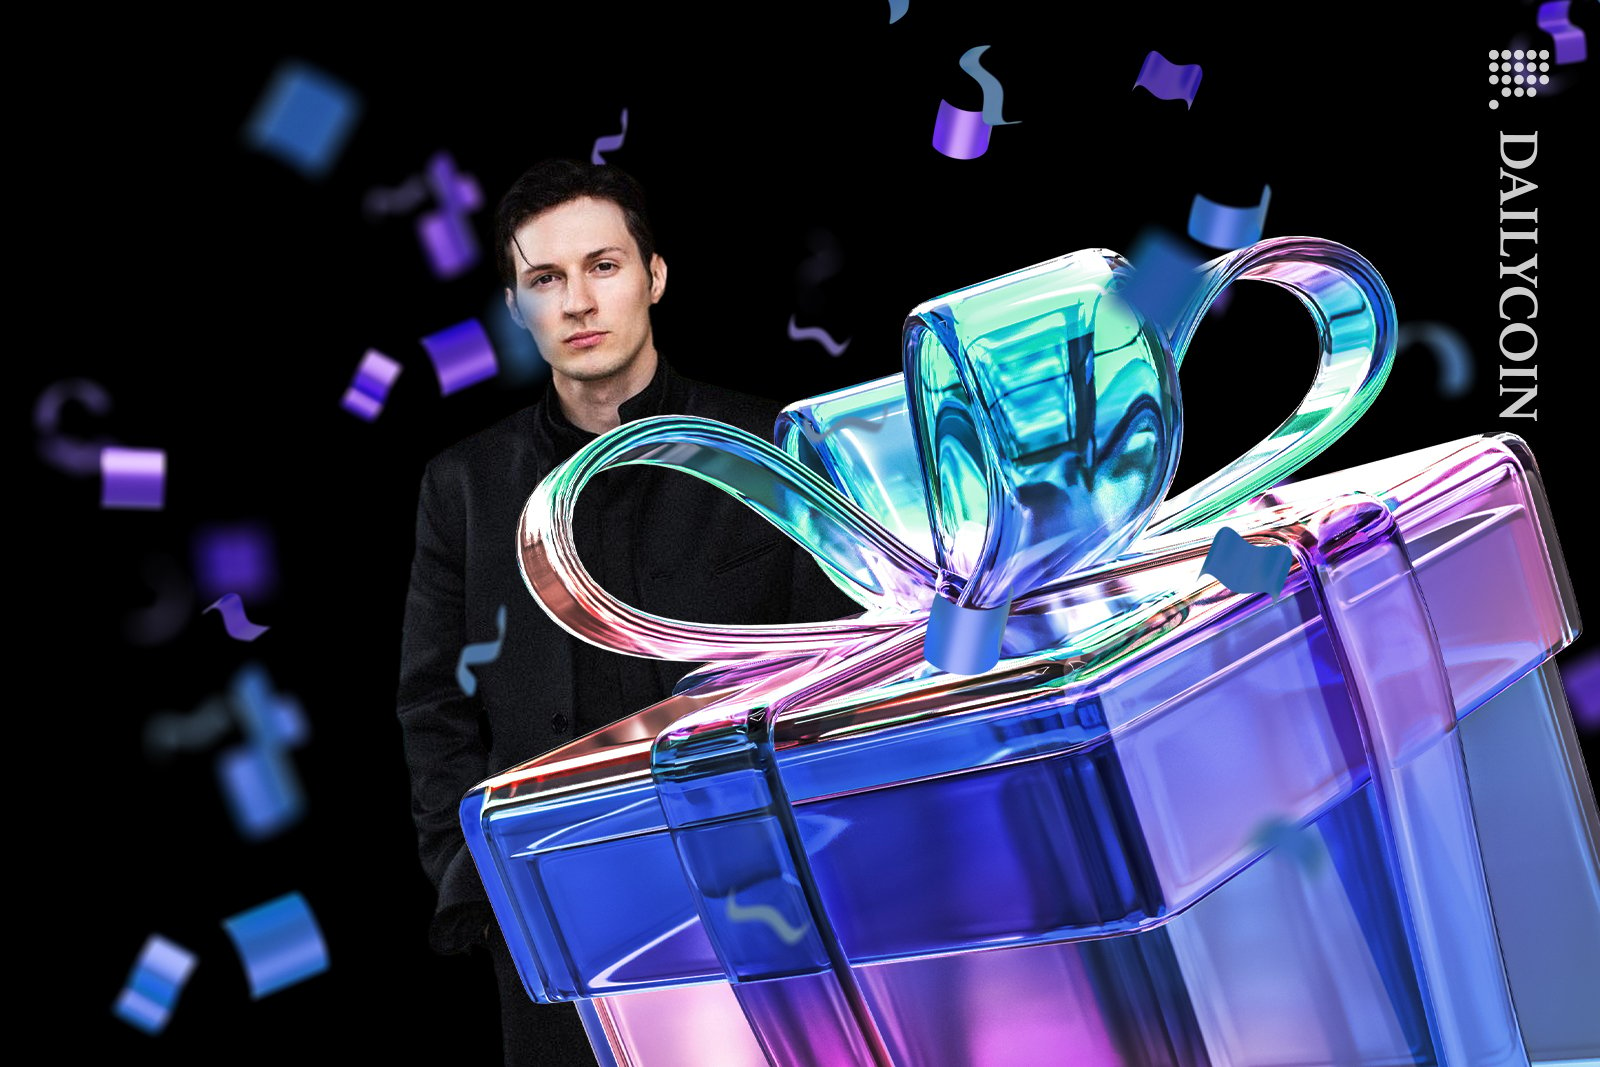 Pavel Durov receives a present.